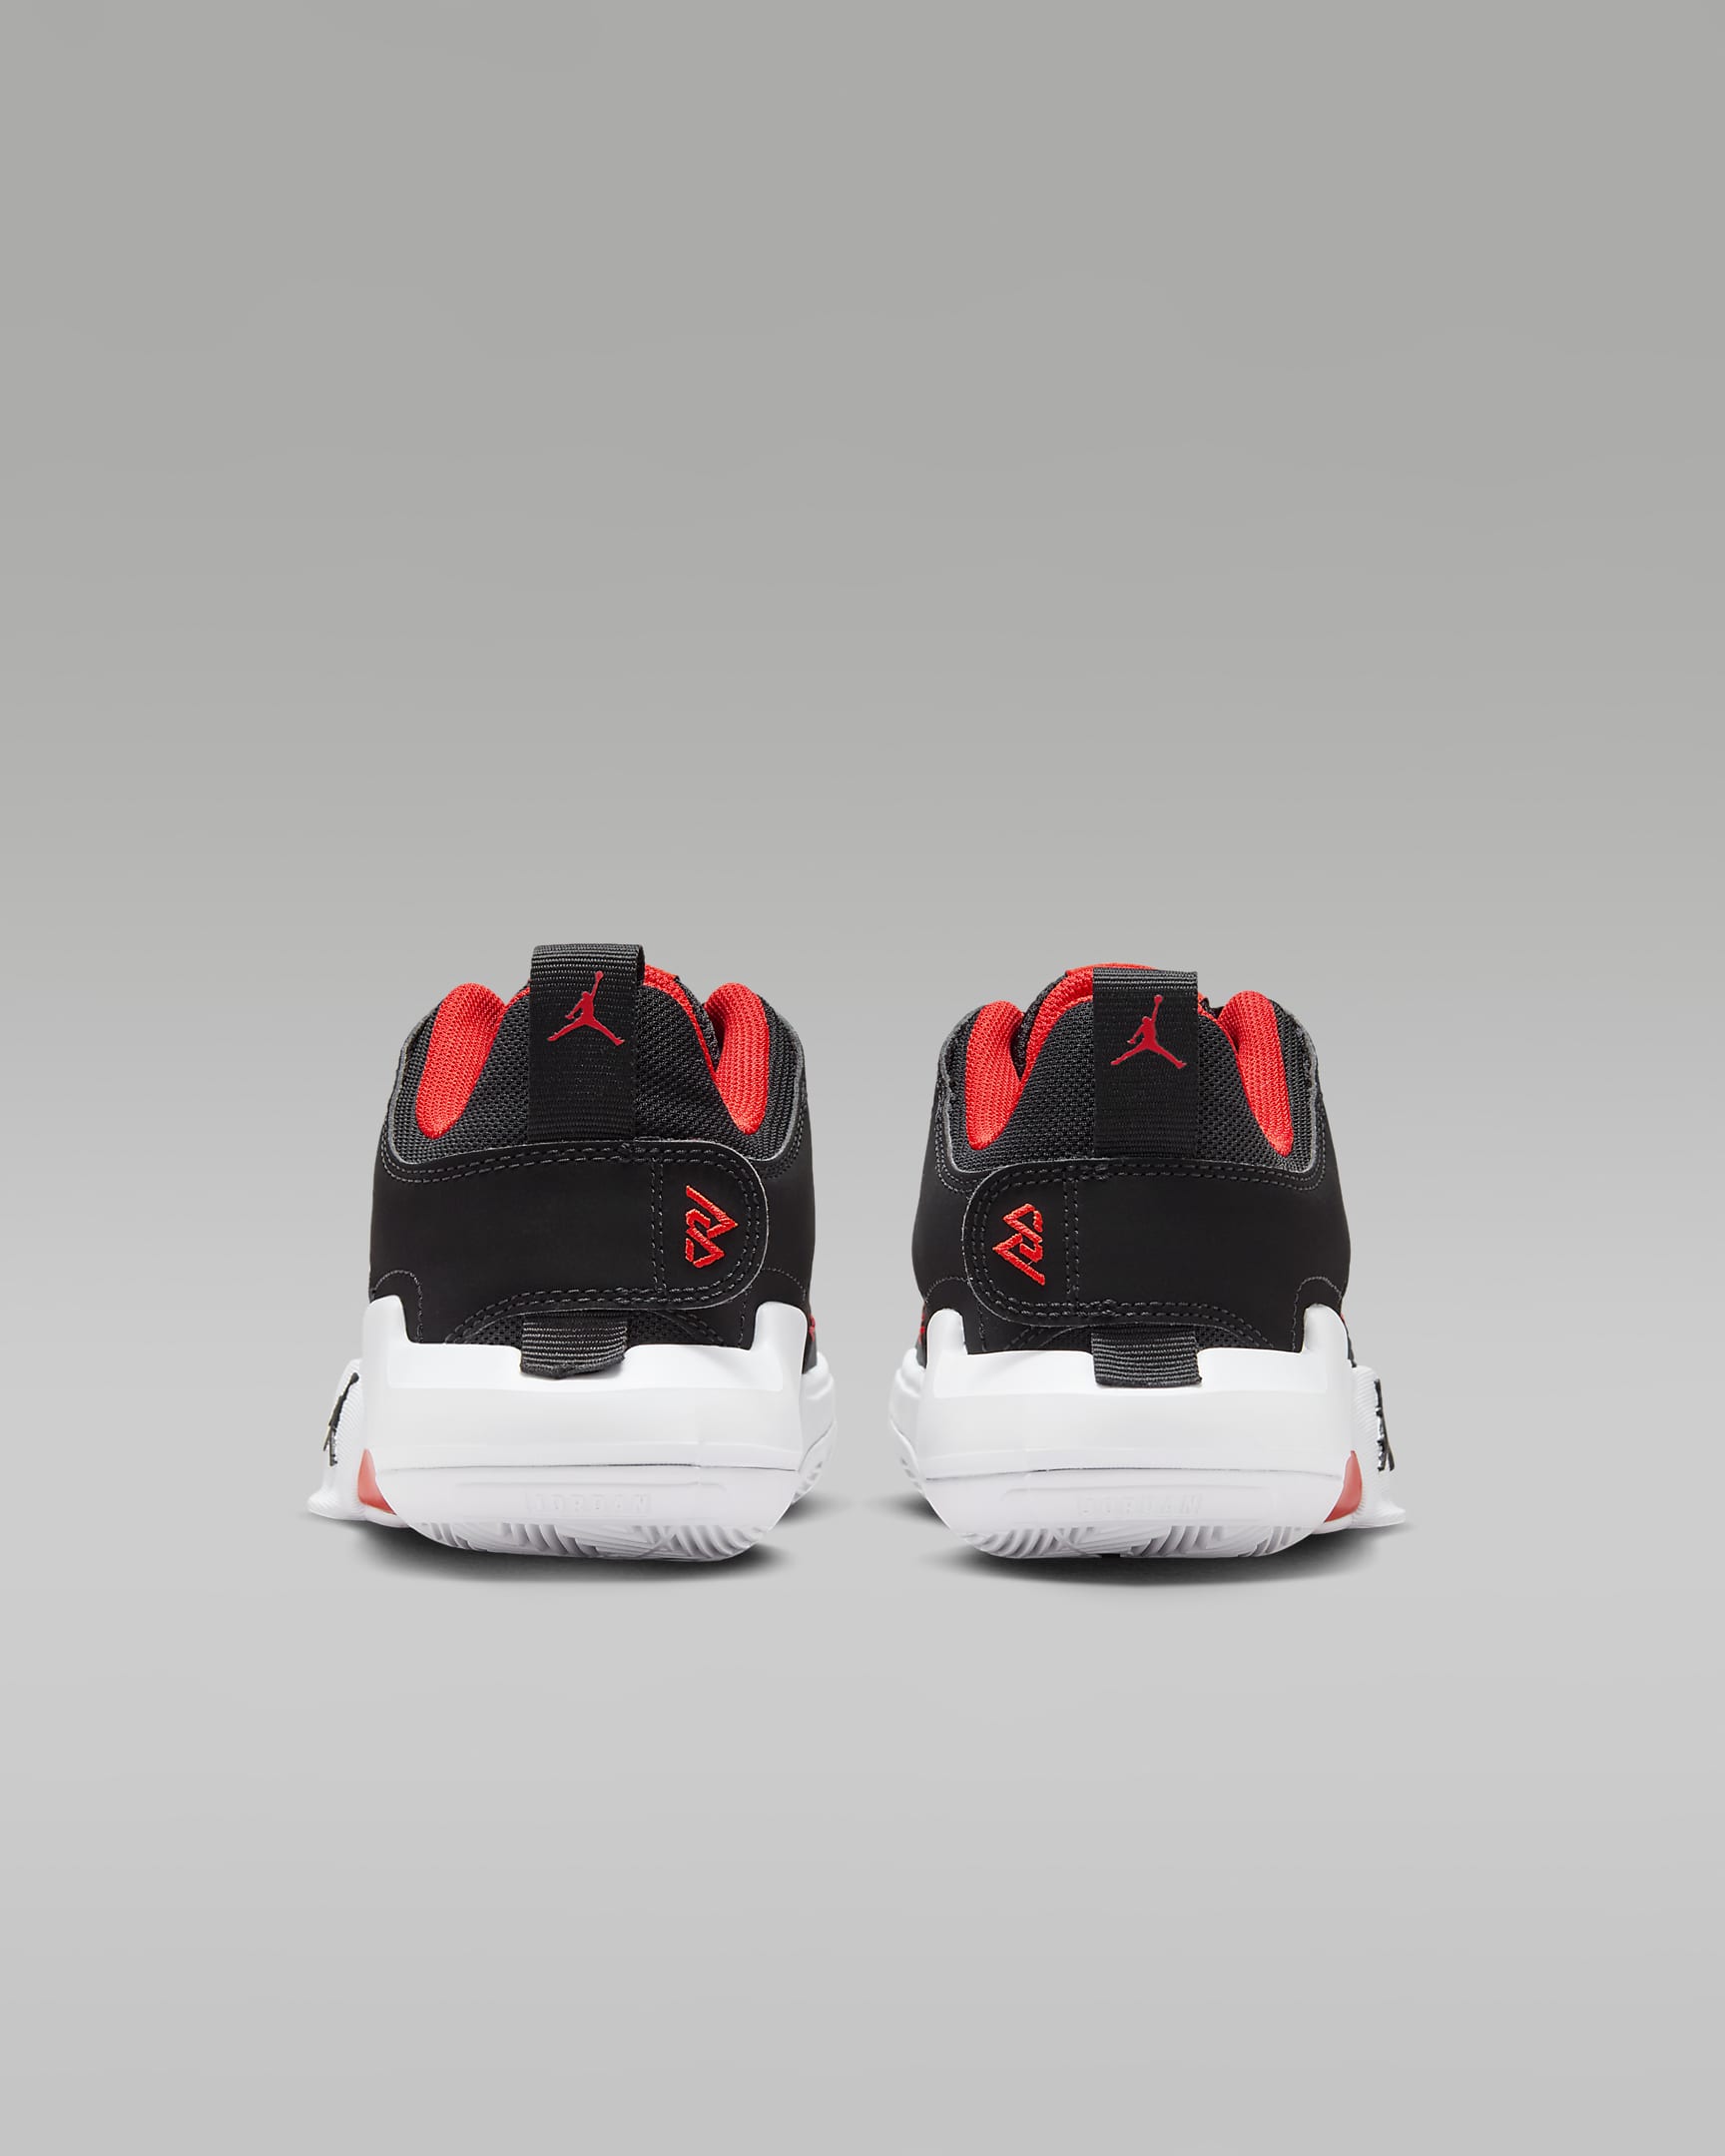 Jordan One Take 5 Older Kids' Shoes - Black/White/Anthracite/Habanero Red